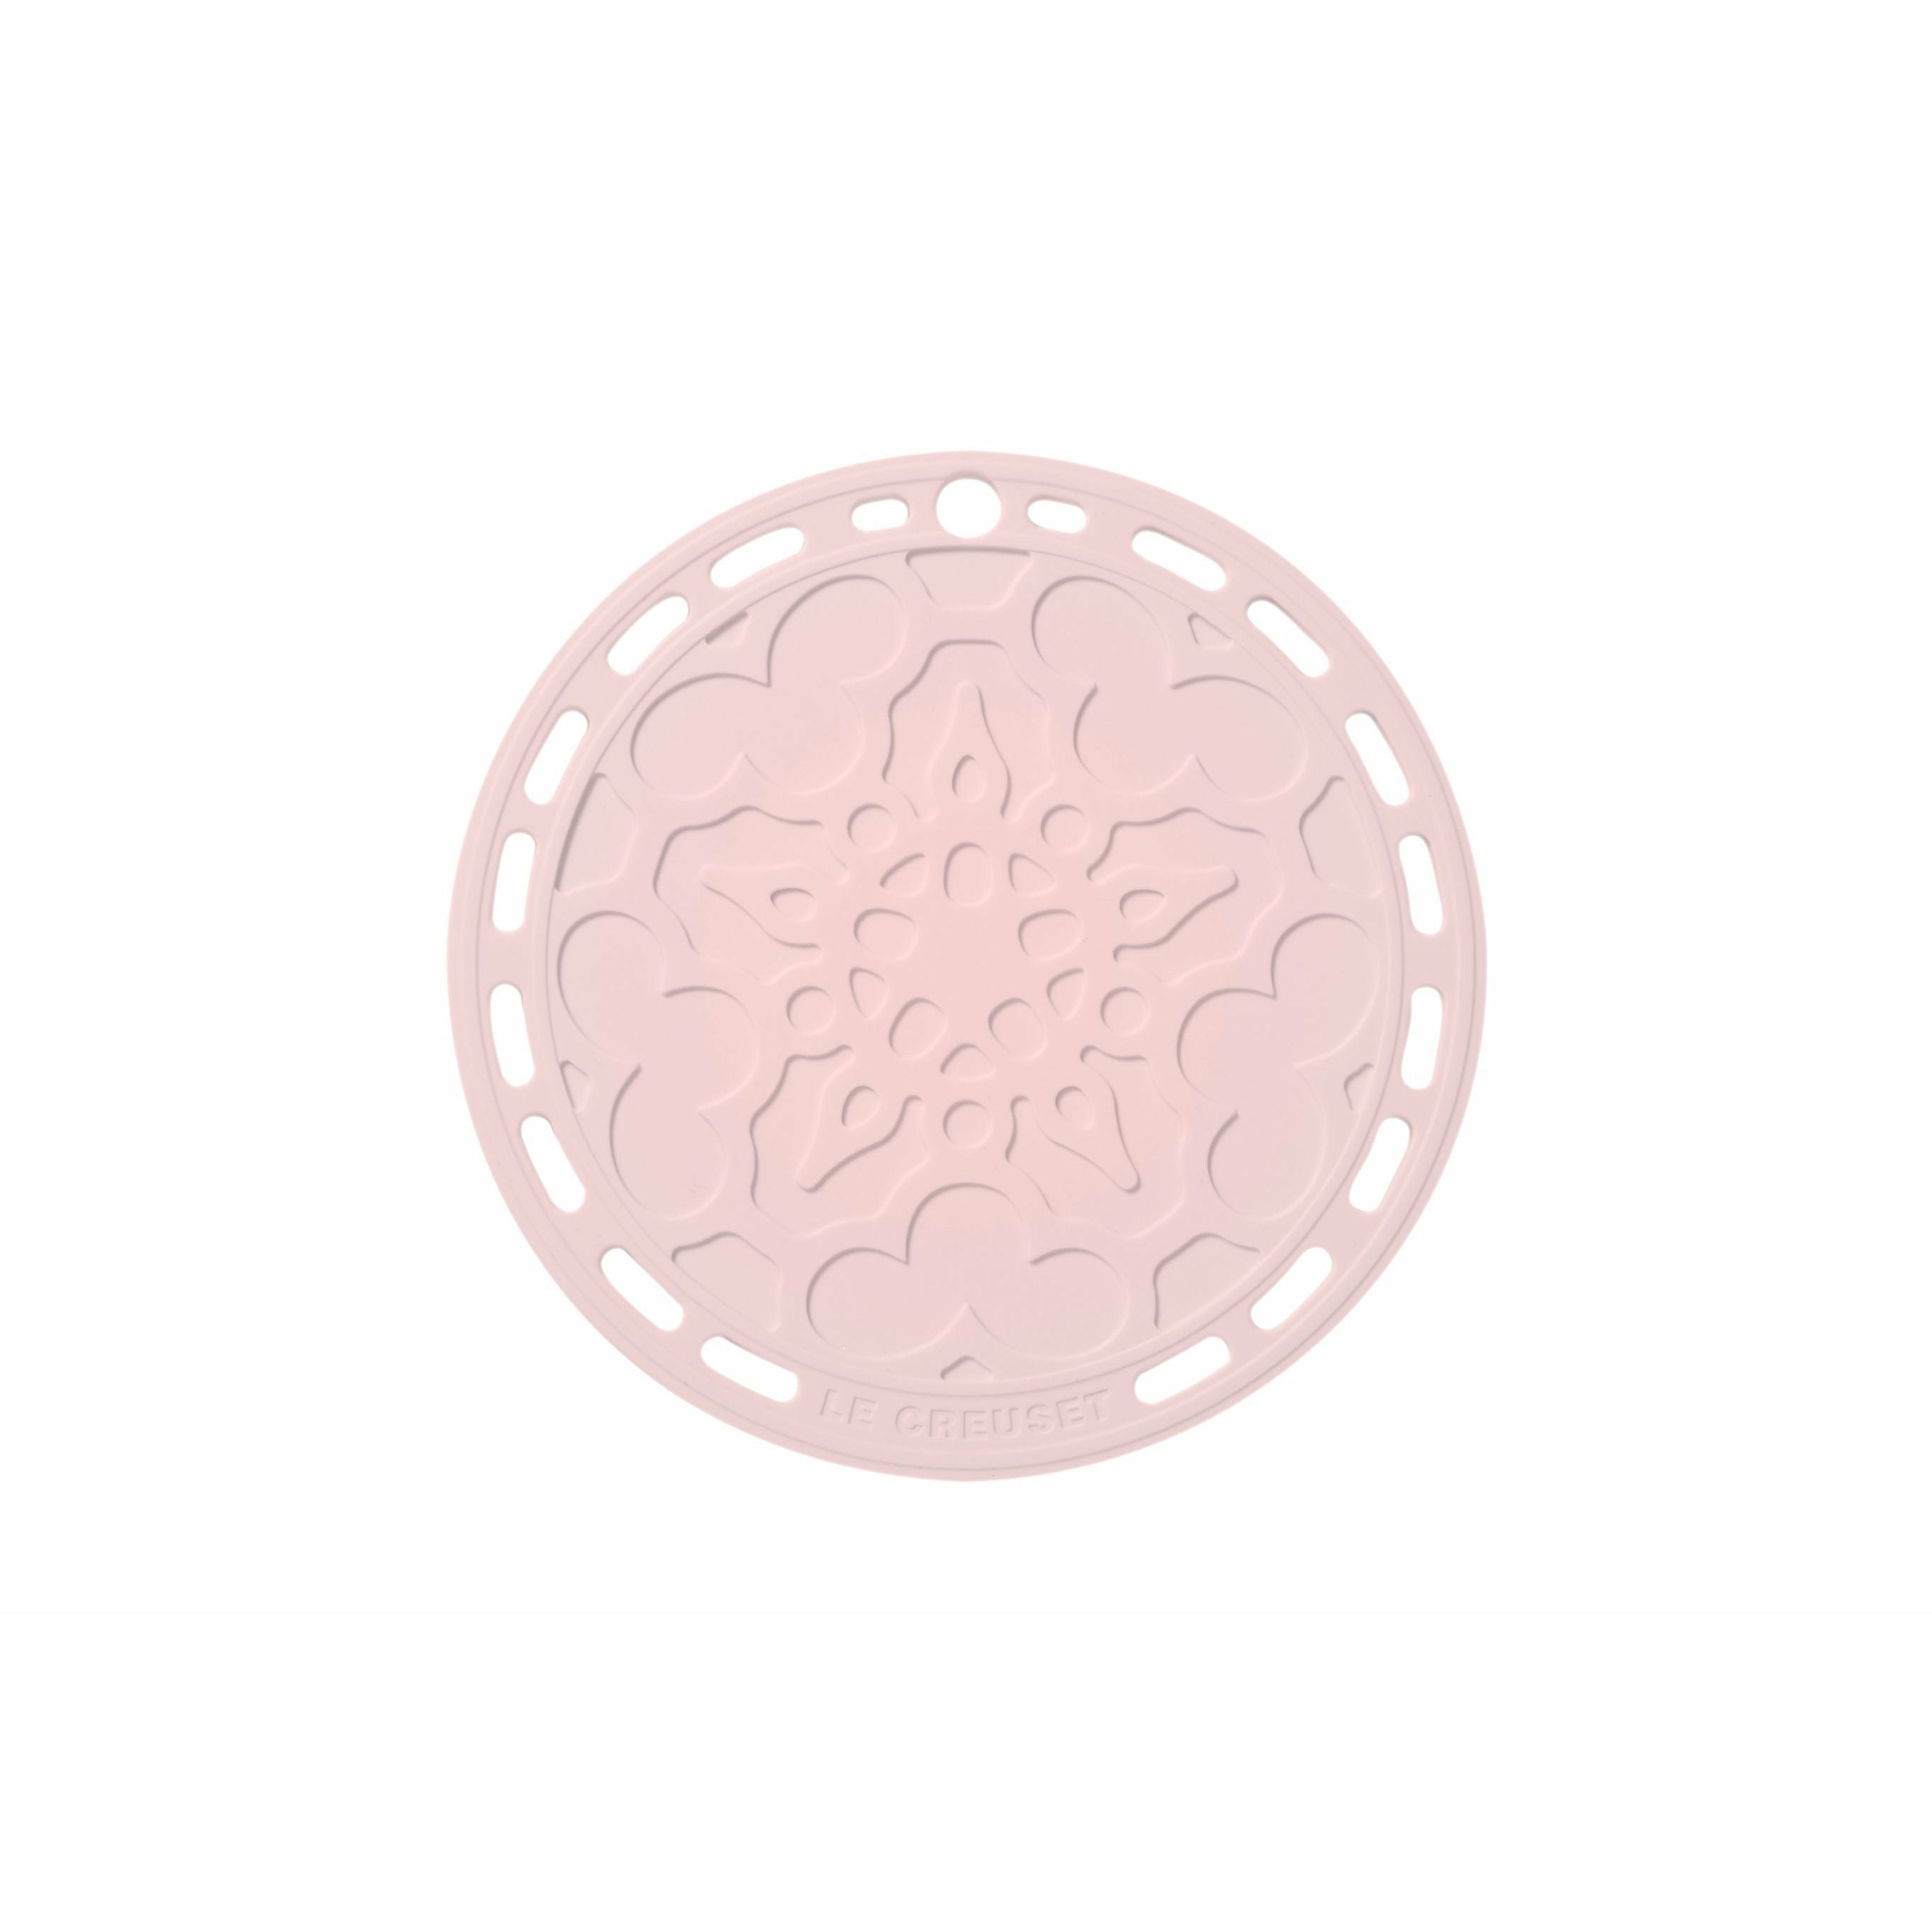 Tradizione di leastri in silicone Le Creuset, rosa